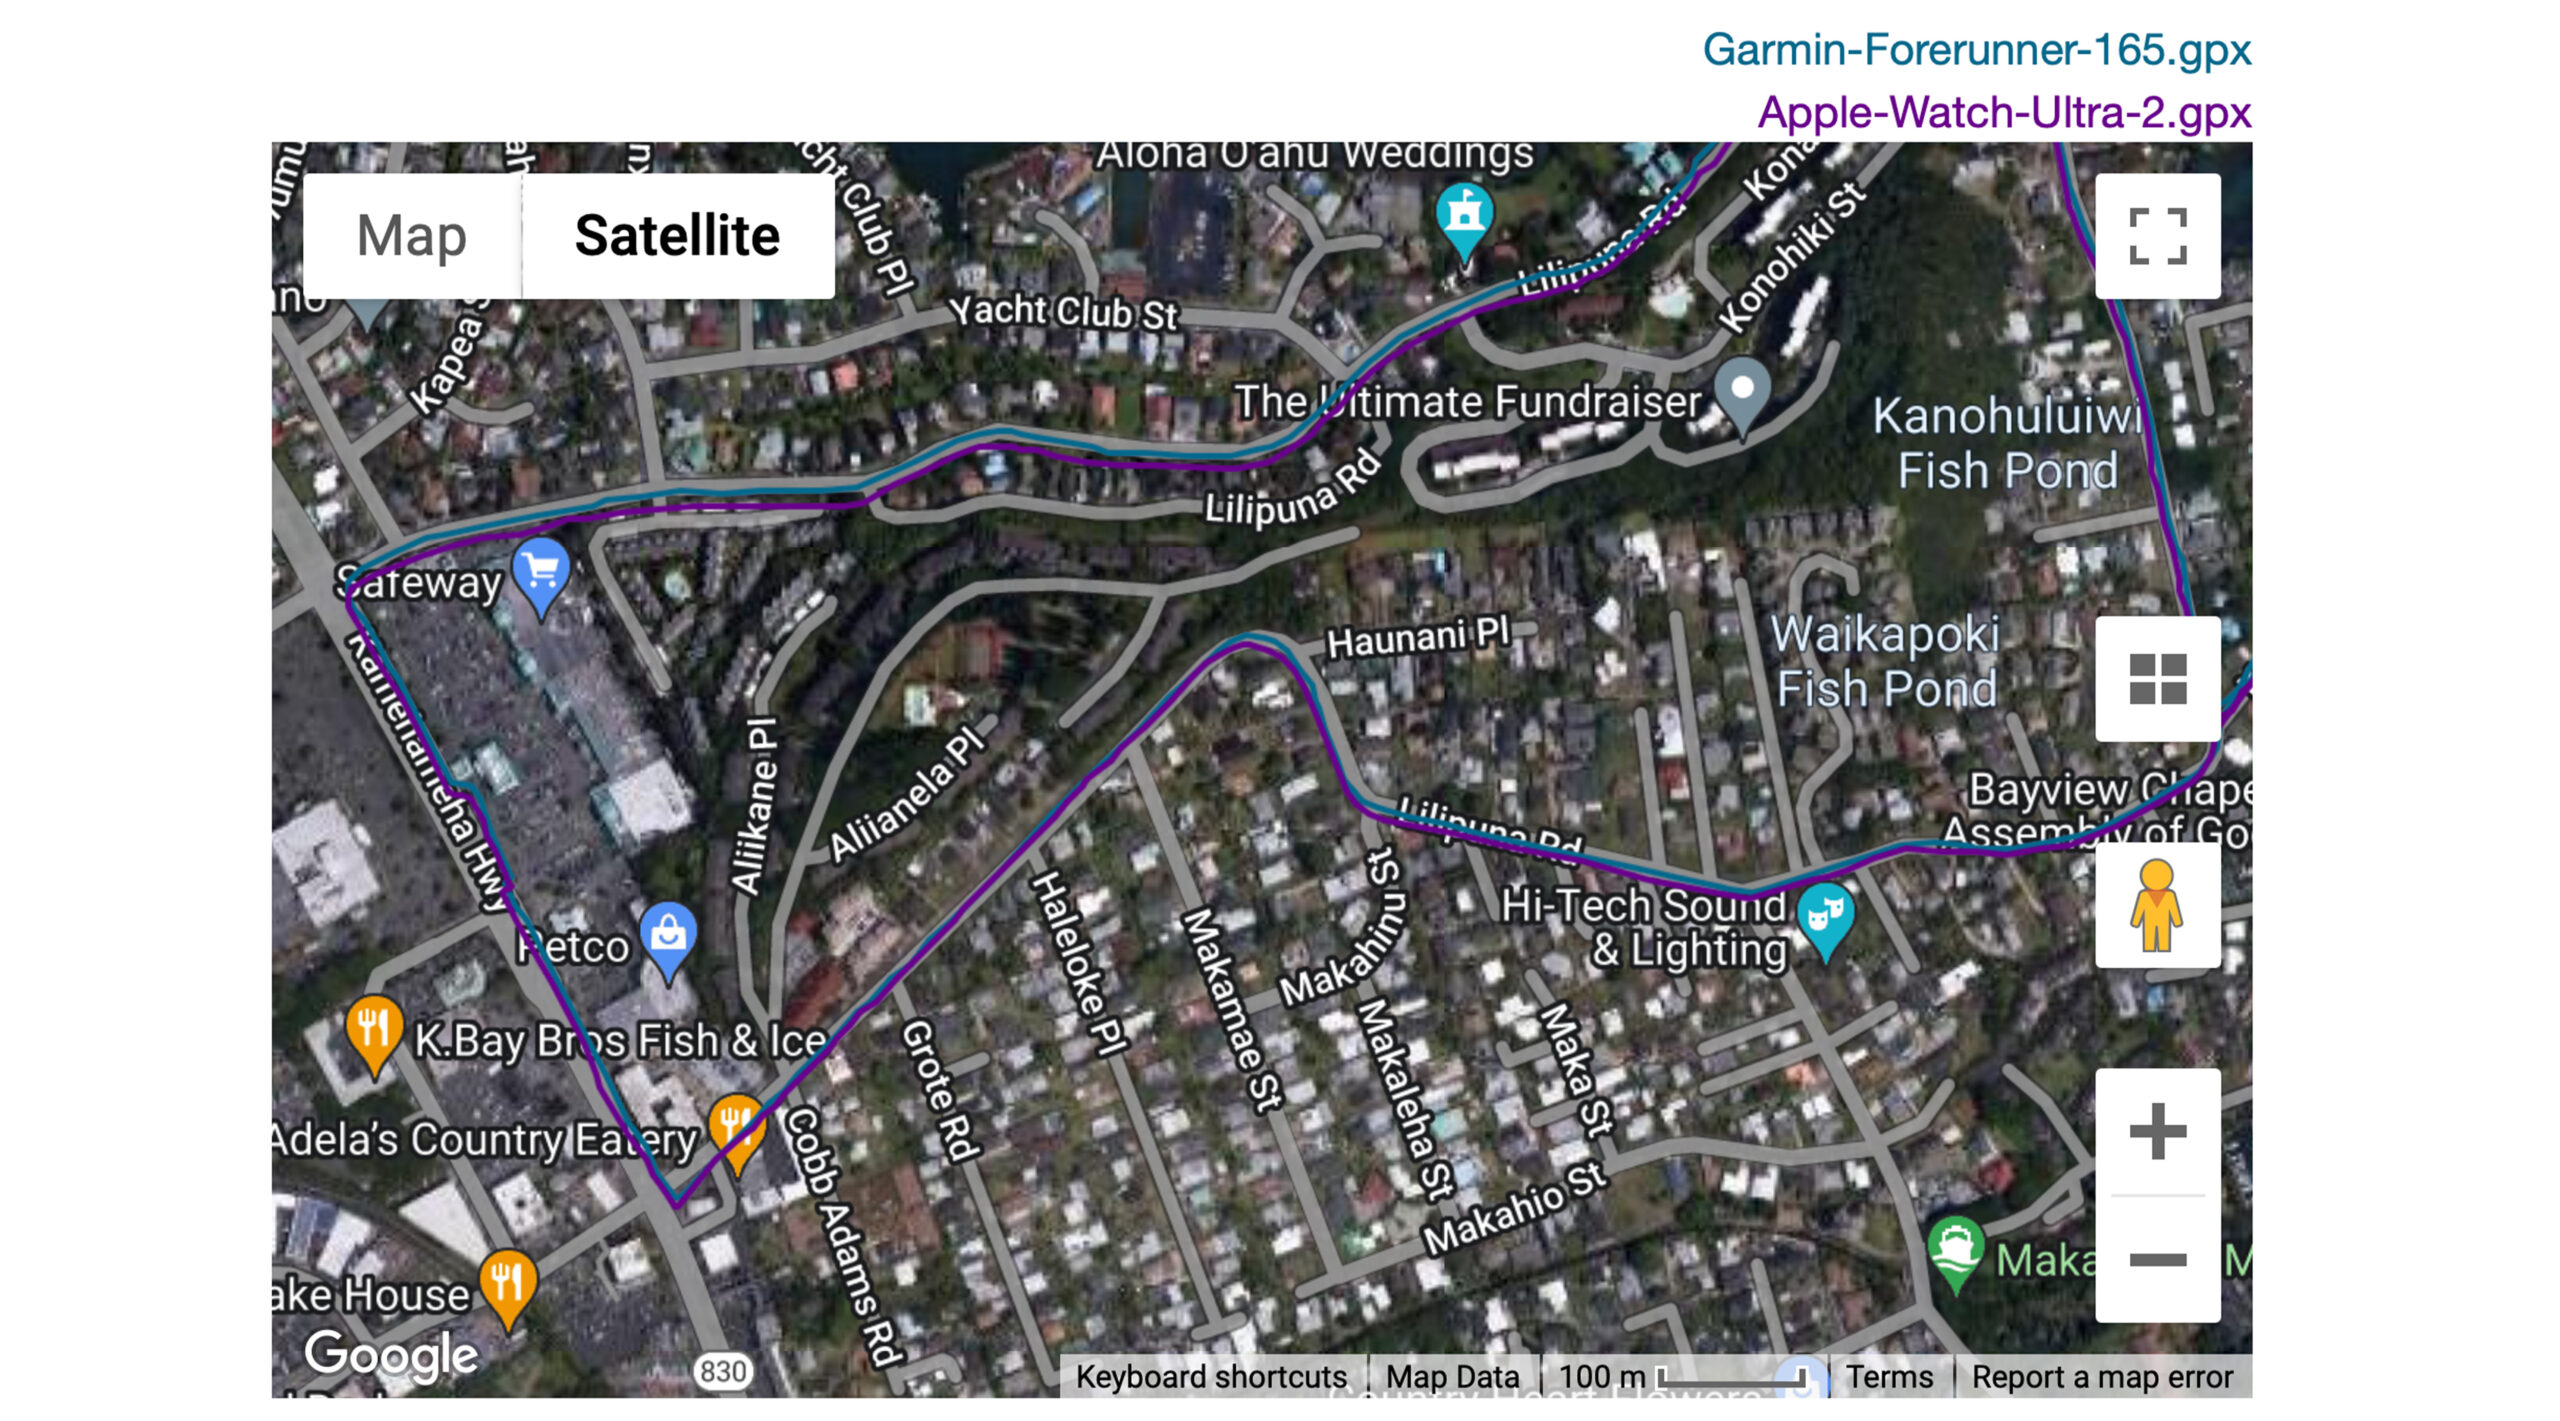 The Garmin Forerunner 165 even outperformed the Apple Watch Ultra 2 on one neighborhood run regarding GPS.